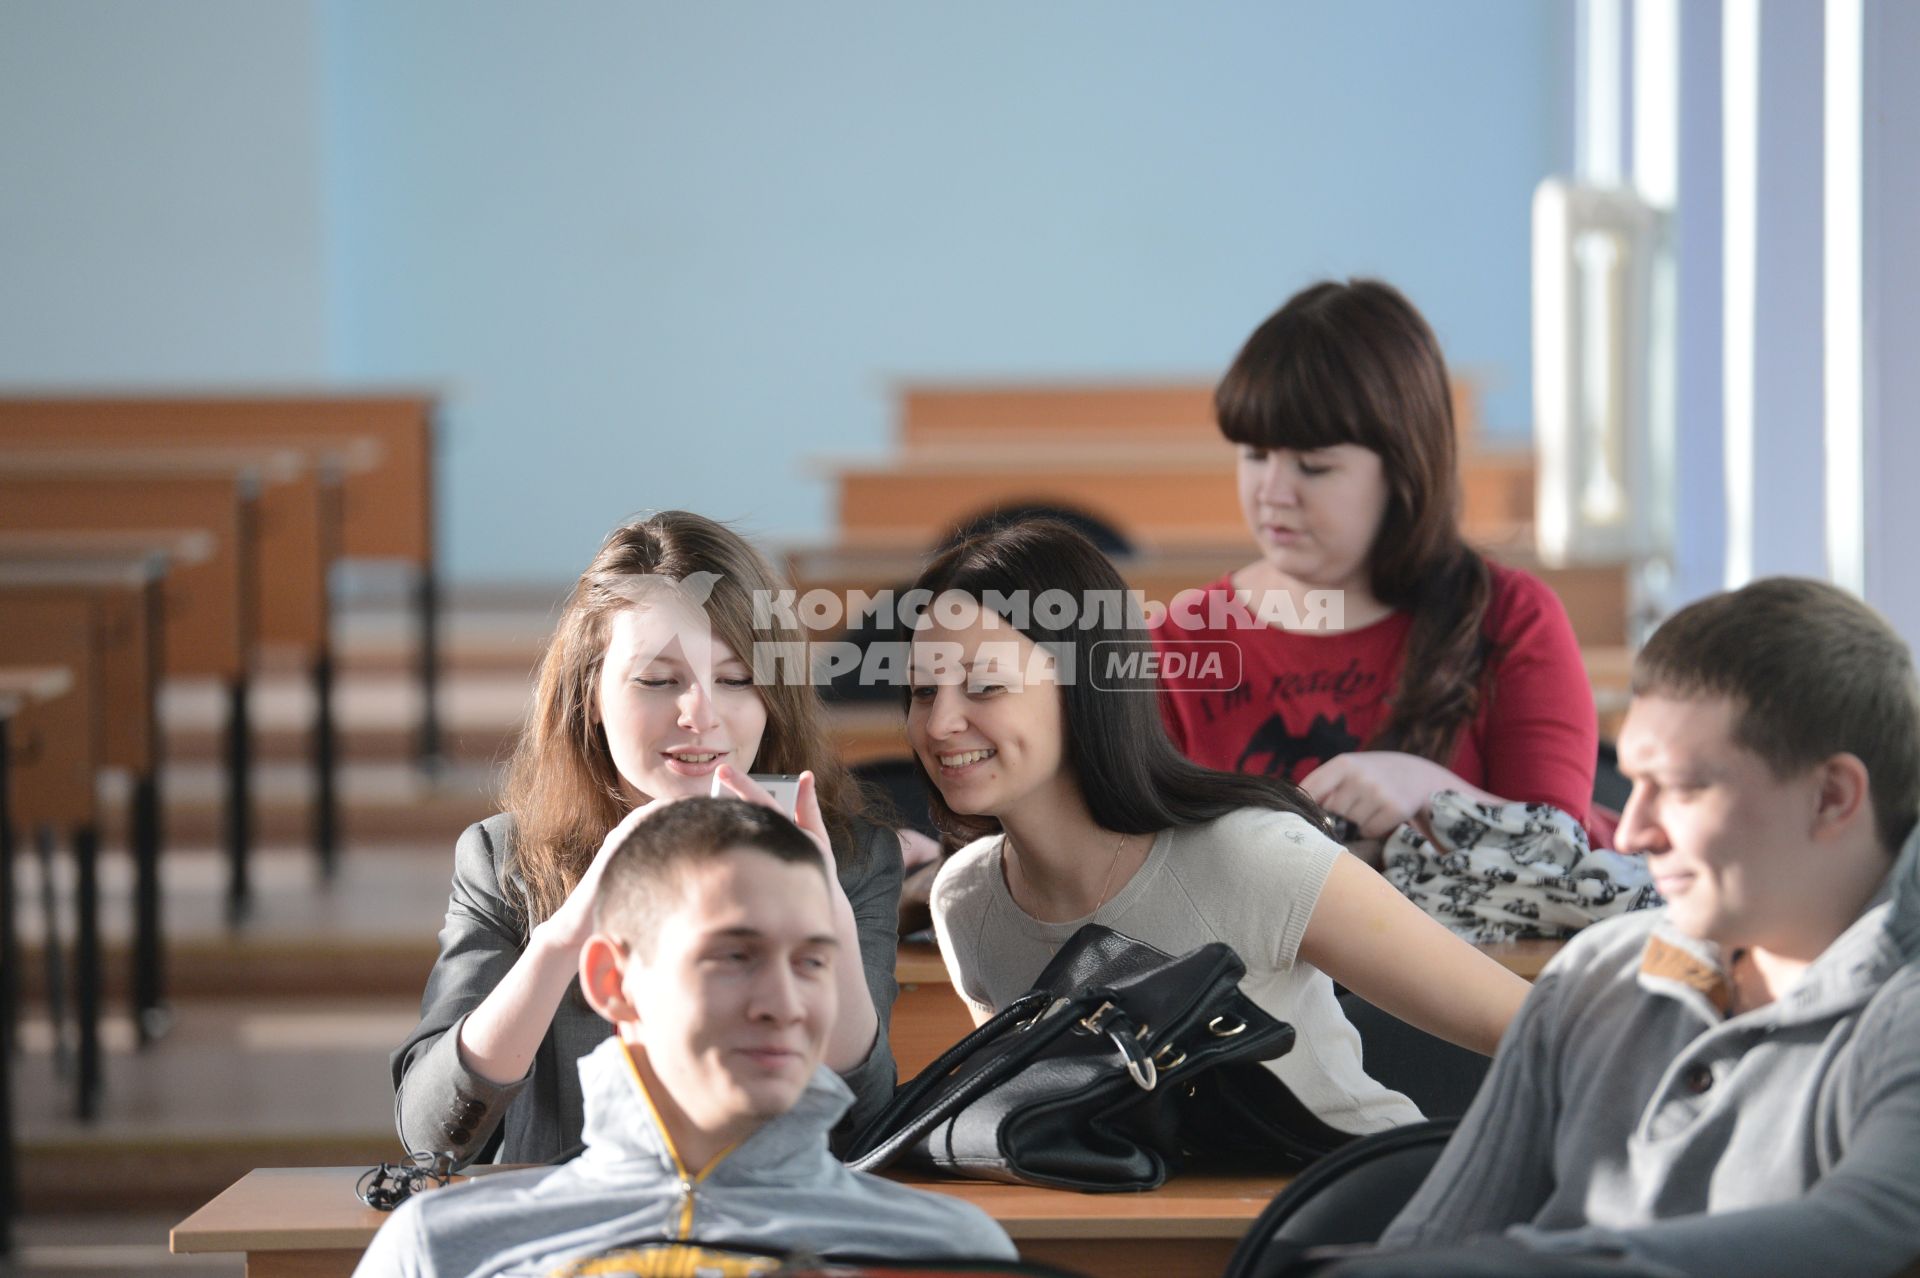 Оренбургский государственный университет. На снимке: студенты перед началом лекции.